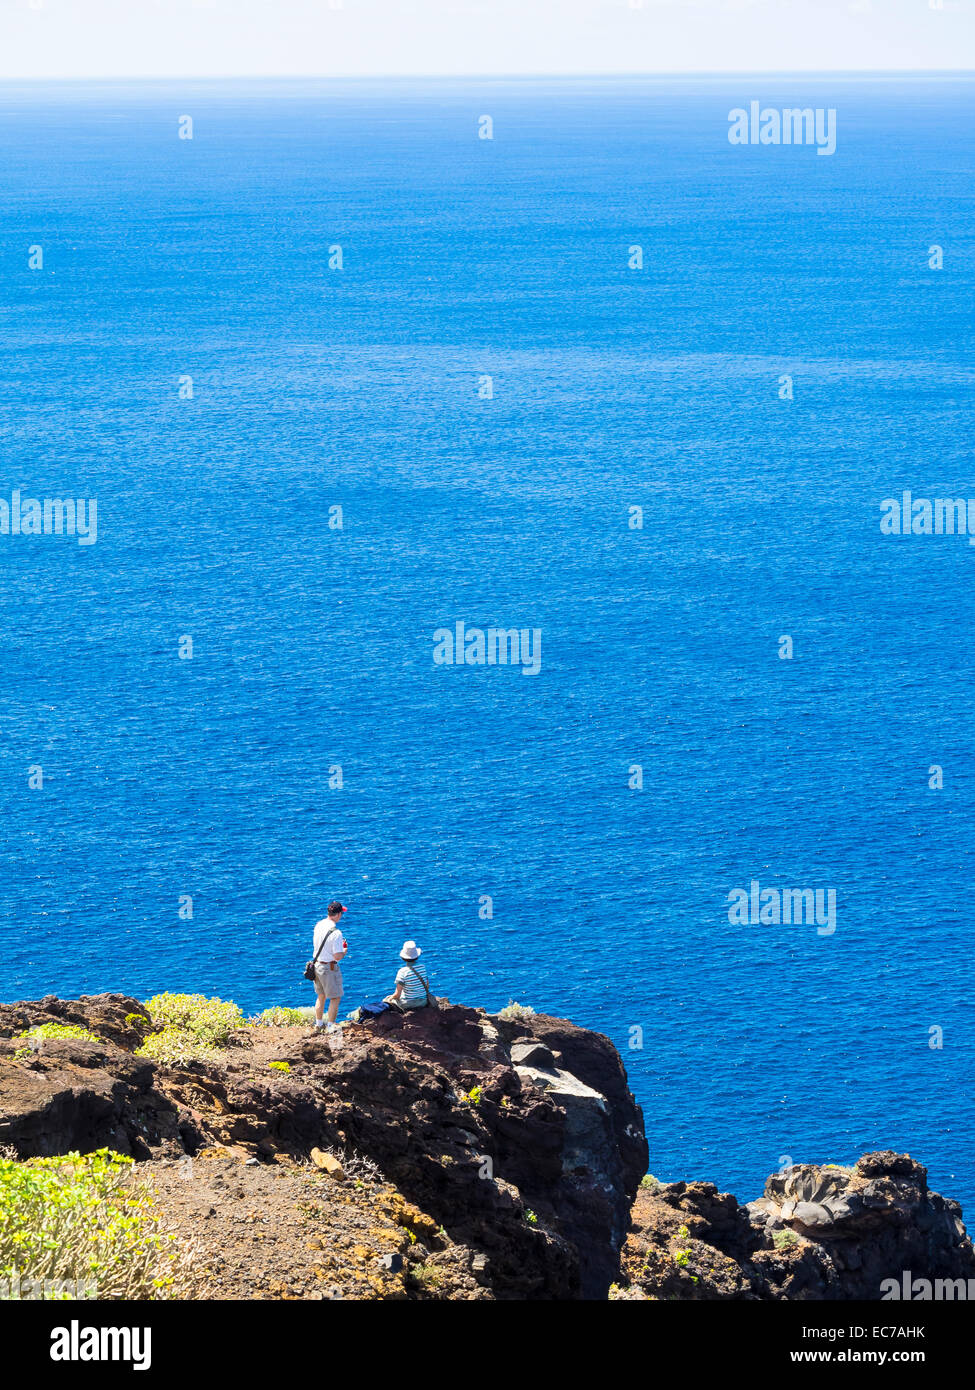 Spain, Canary Islands, La Palma, tourists at the cliff coast of Garafia Stock Photo